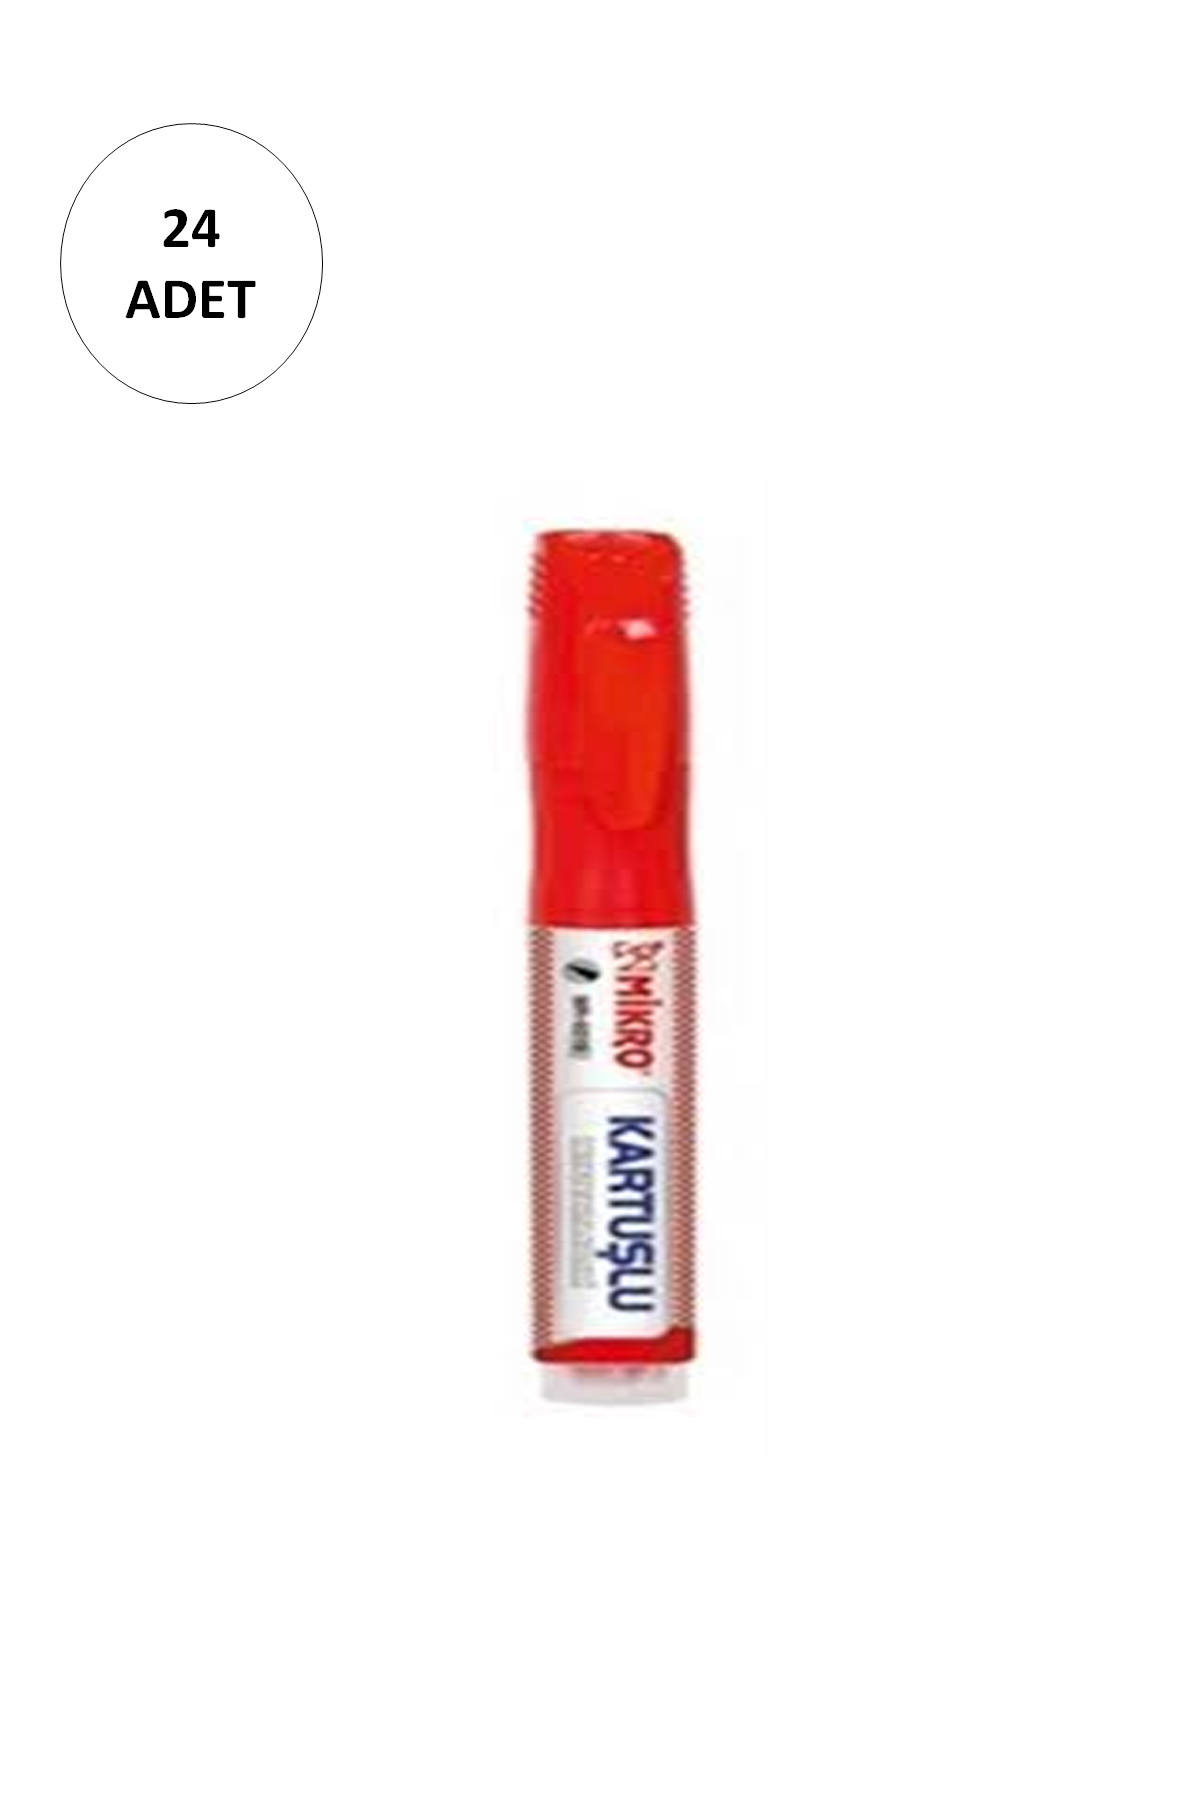 24 Adet Mikro Mr-6019 Kartuşlu Beyaz Tahta Kalemi Kırmızı